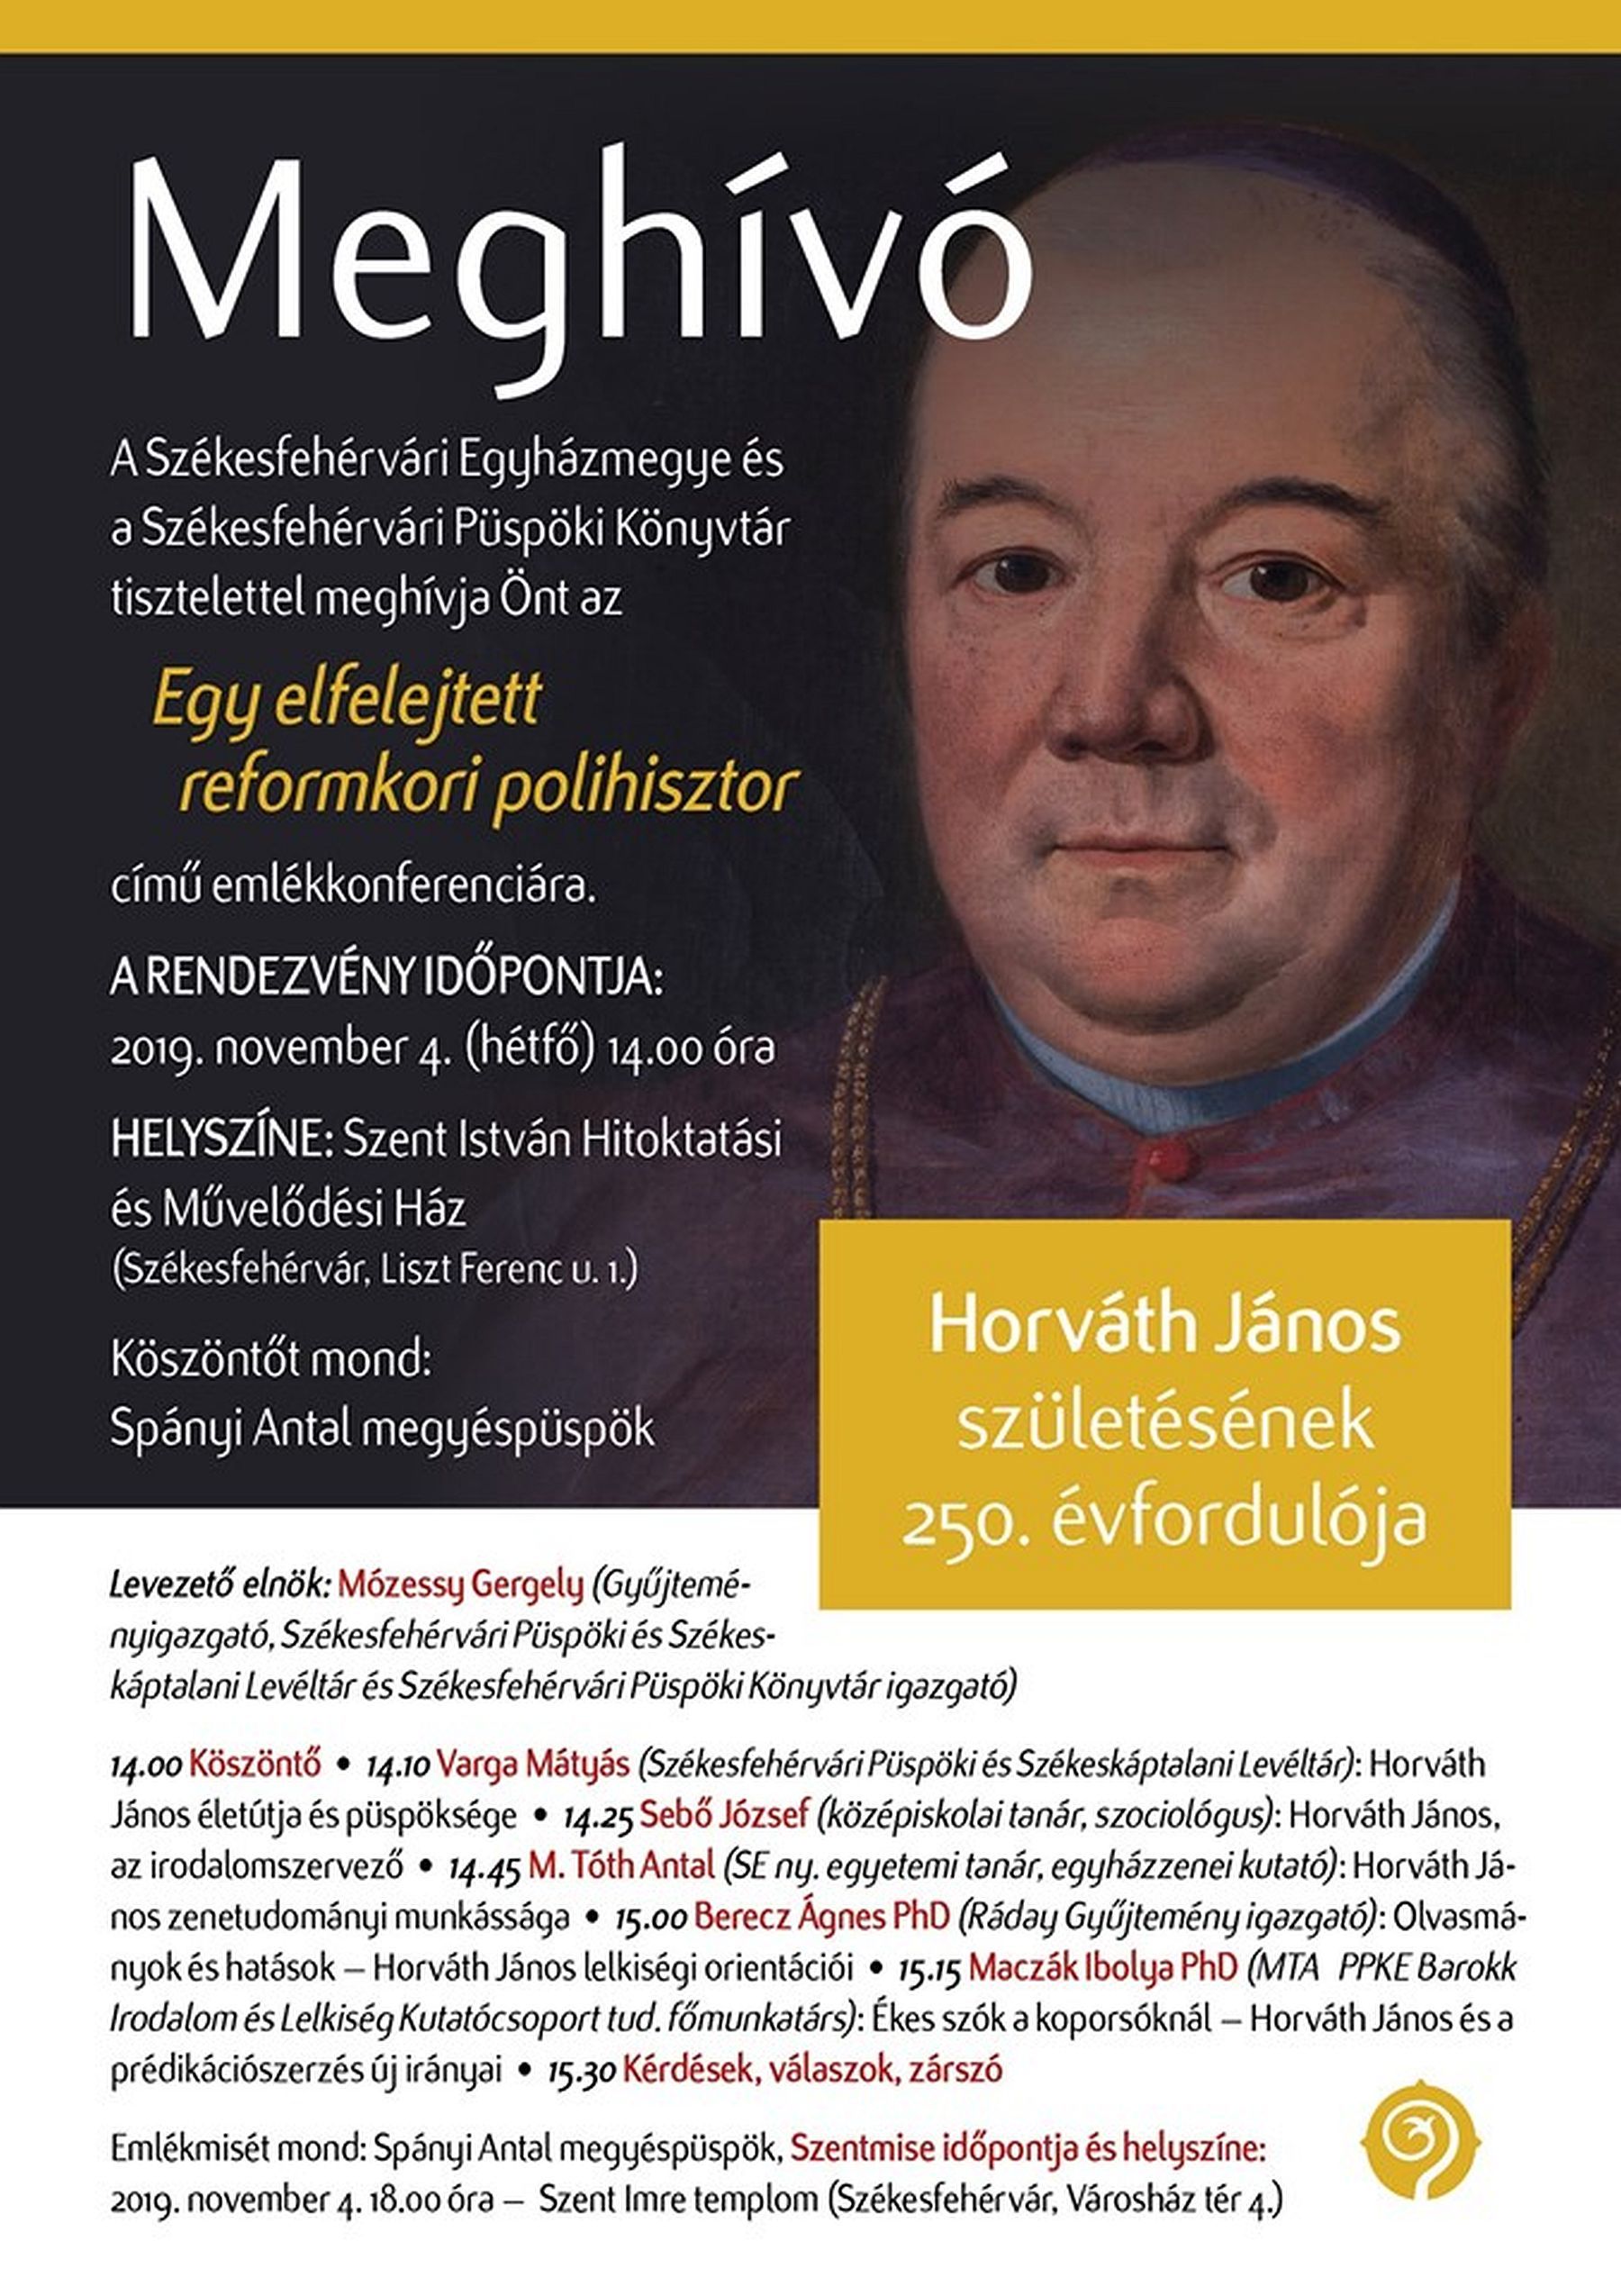 Egy elfelejtett reformkori polihisztor - emlékkonferencia Horváth János, püspök születésének 250. évfordulóján